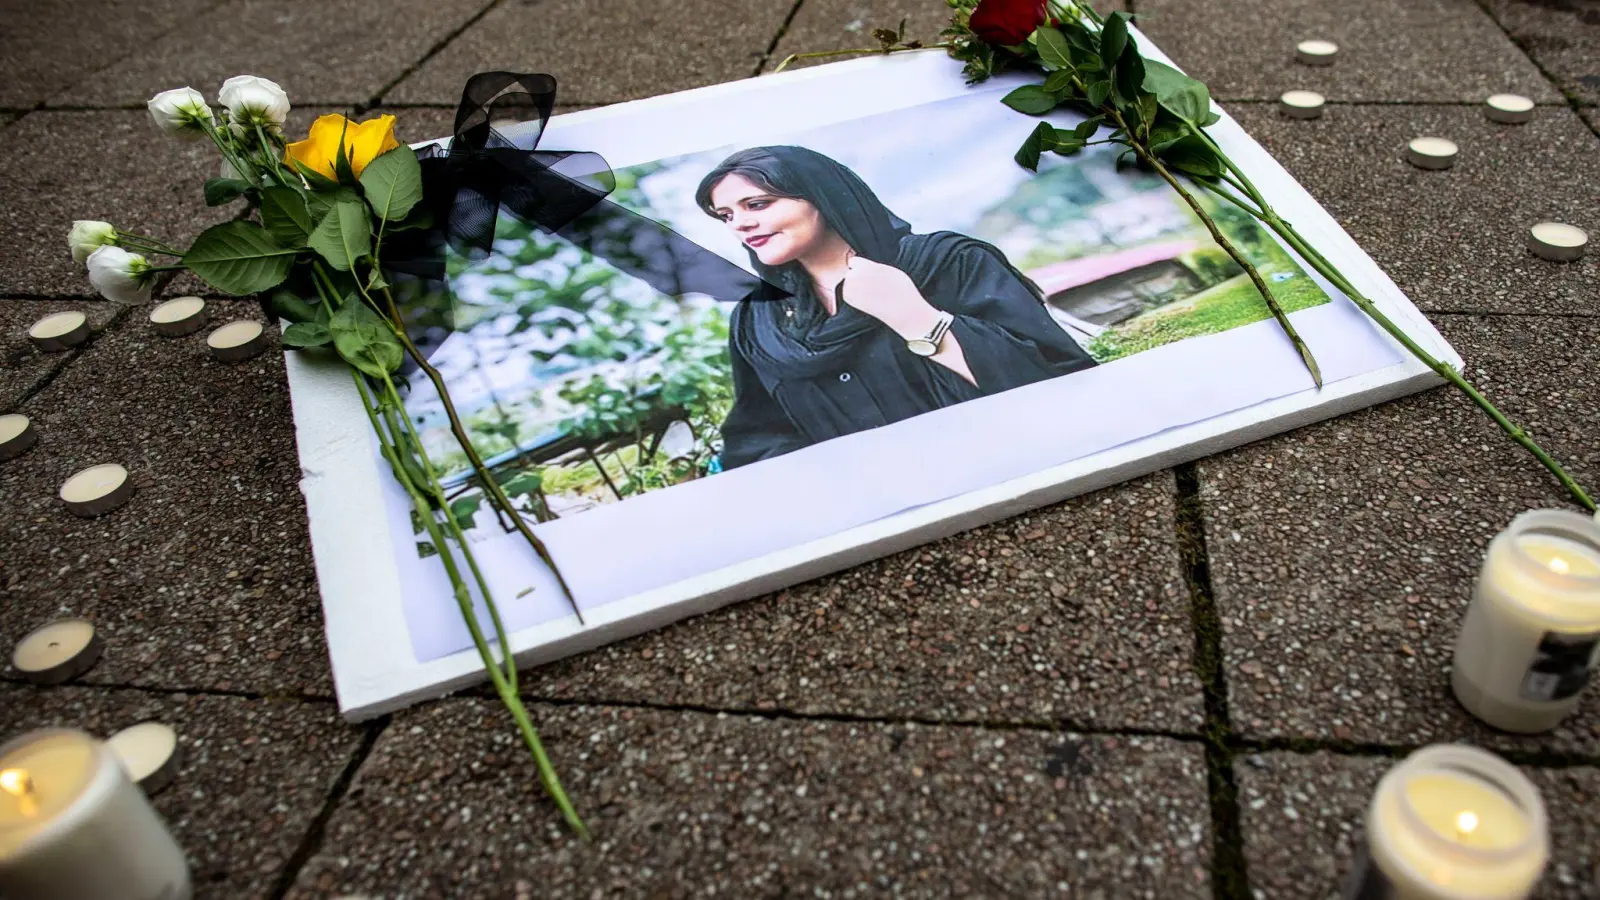 Ein Bild der verstorbenen Iranerin Mahsa Amini, die in der vergangenen Woche im Iran nach ihrer Verhaftung durch die Sittenpolizei gestorben war, ist während einer Solidaritätskundgebung zu sehen. (Foto: Christoph Reichwein/dpa)